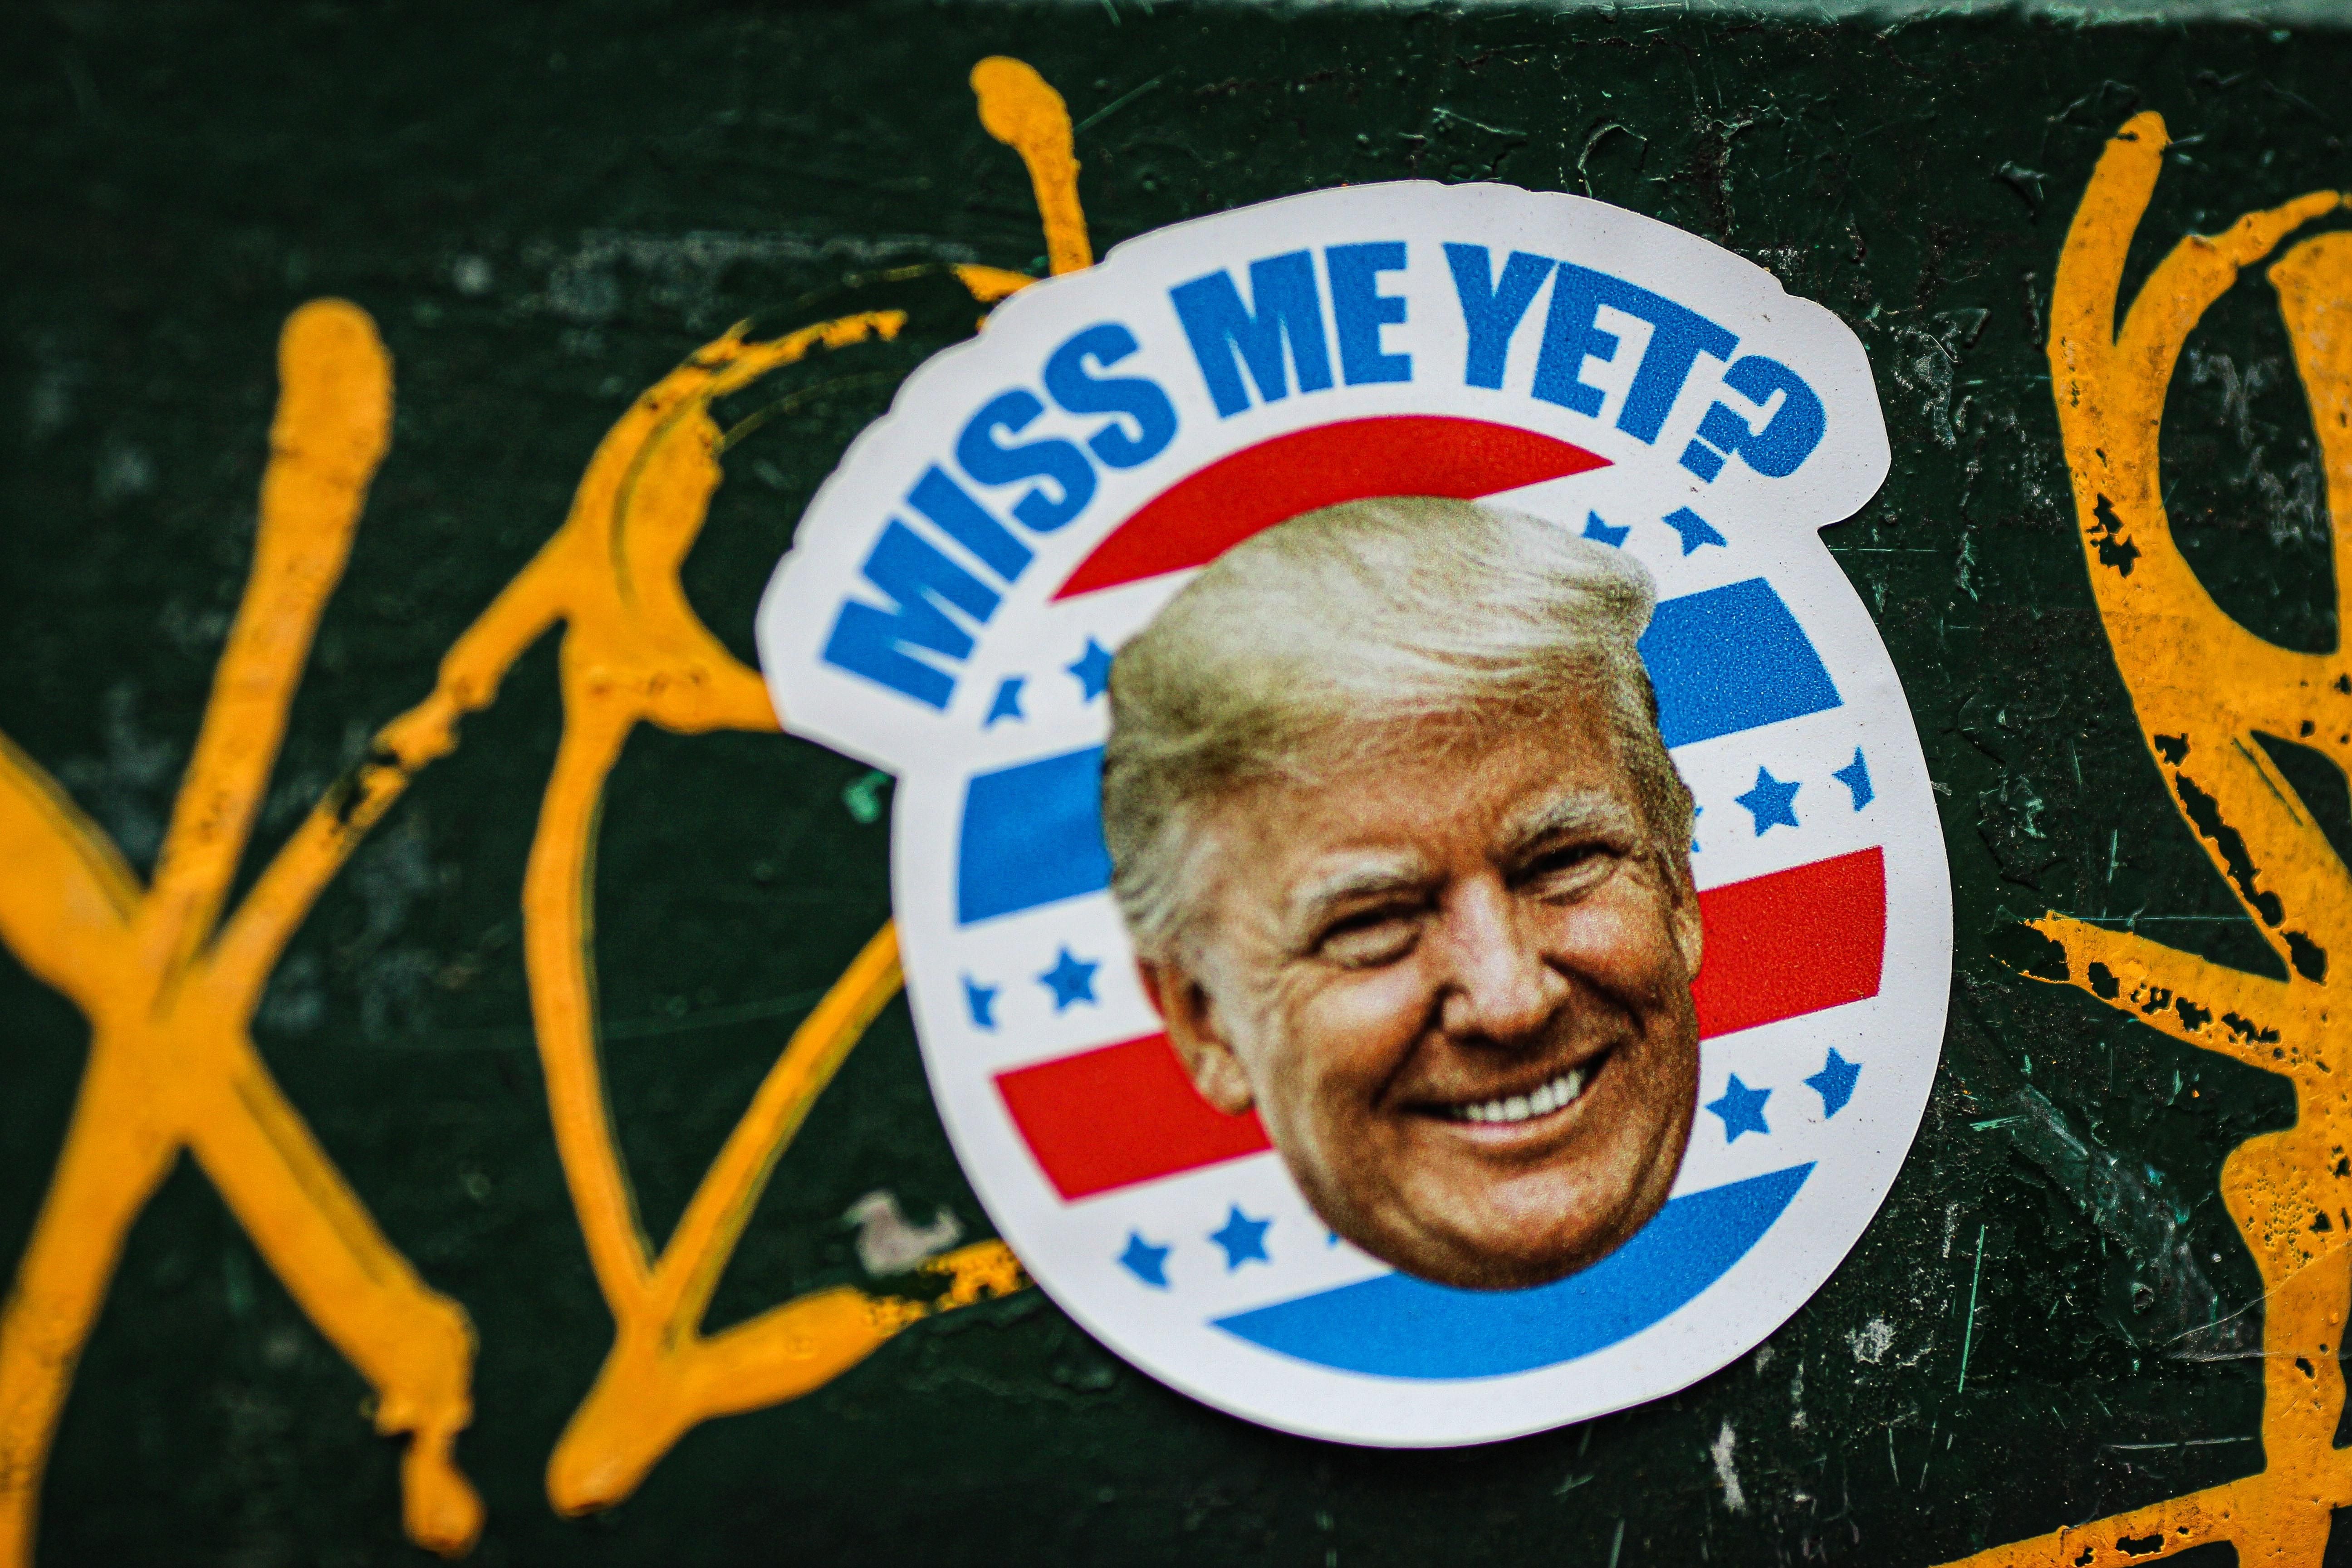 Miss me yet? feliratú, Donald Trumpot ábrázoló matrica egy összefirkált felületen